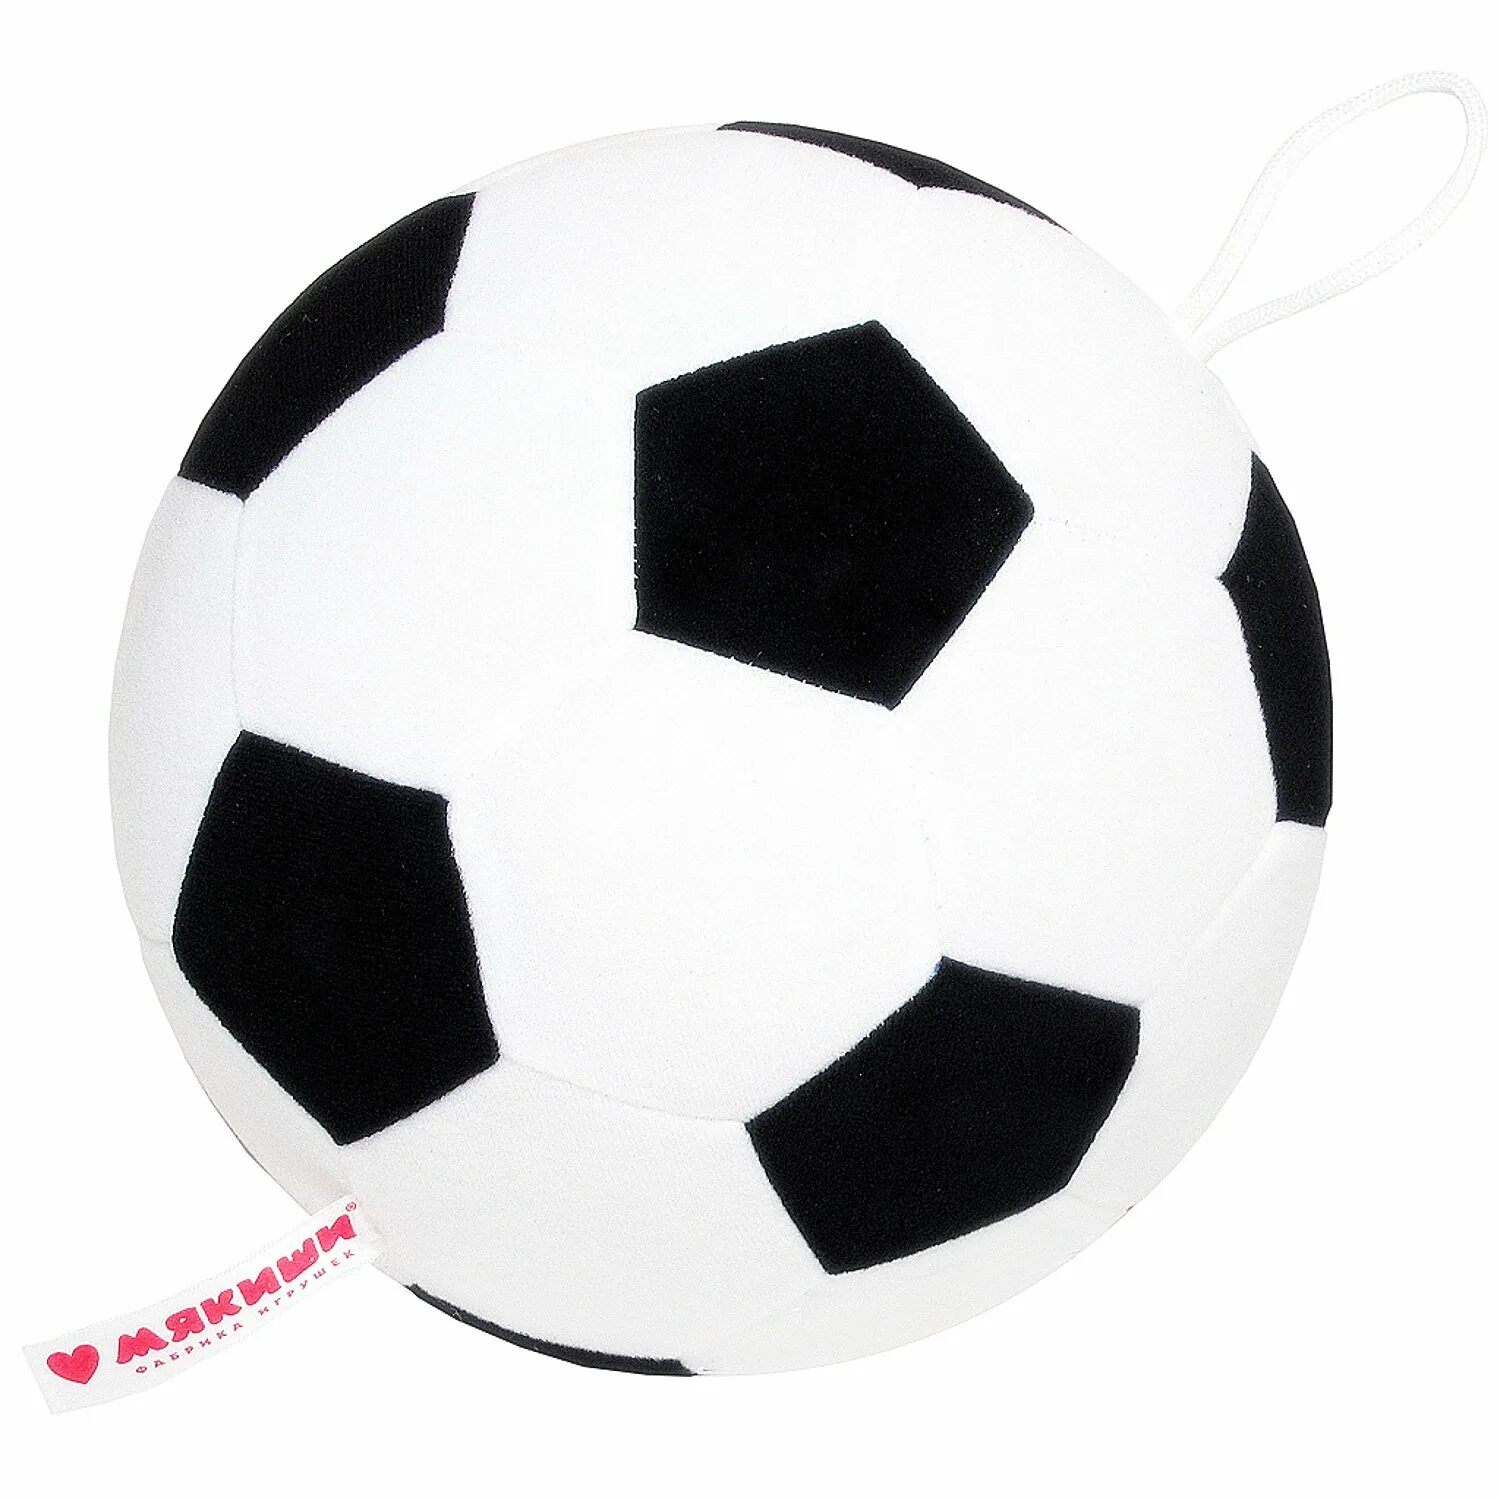 Мяч футбол, игрушка Мякиши 008. Мяч 1toy футбольный. Мяч Мякиши футбол 18 см. Футбольные мячи недорогие. Мяч игрушка купить